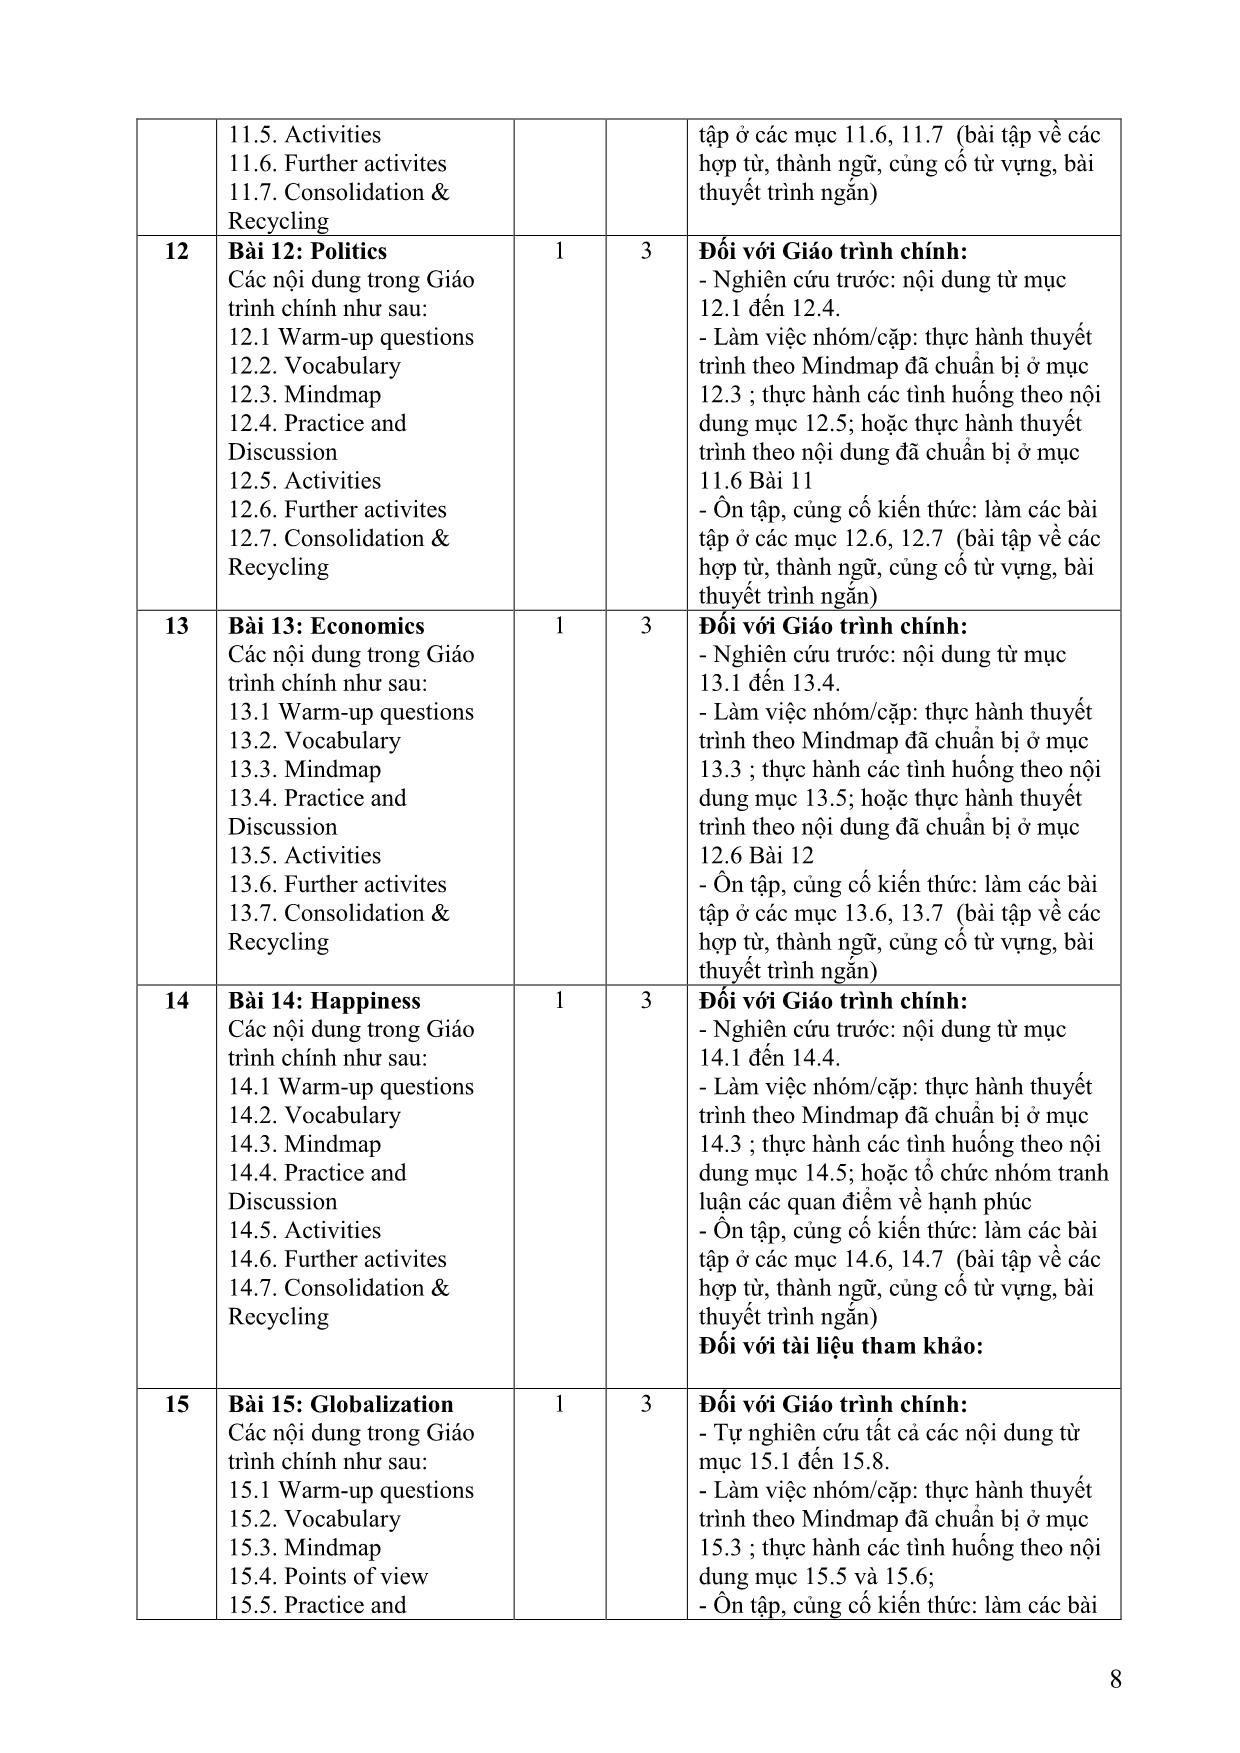 Đề cương chi tiết học phần Nói tiếng Anh 2 (Speaking 2) trang 8